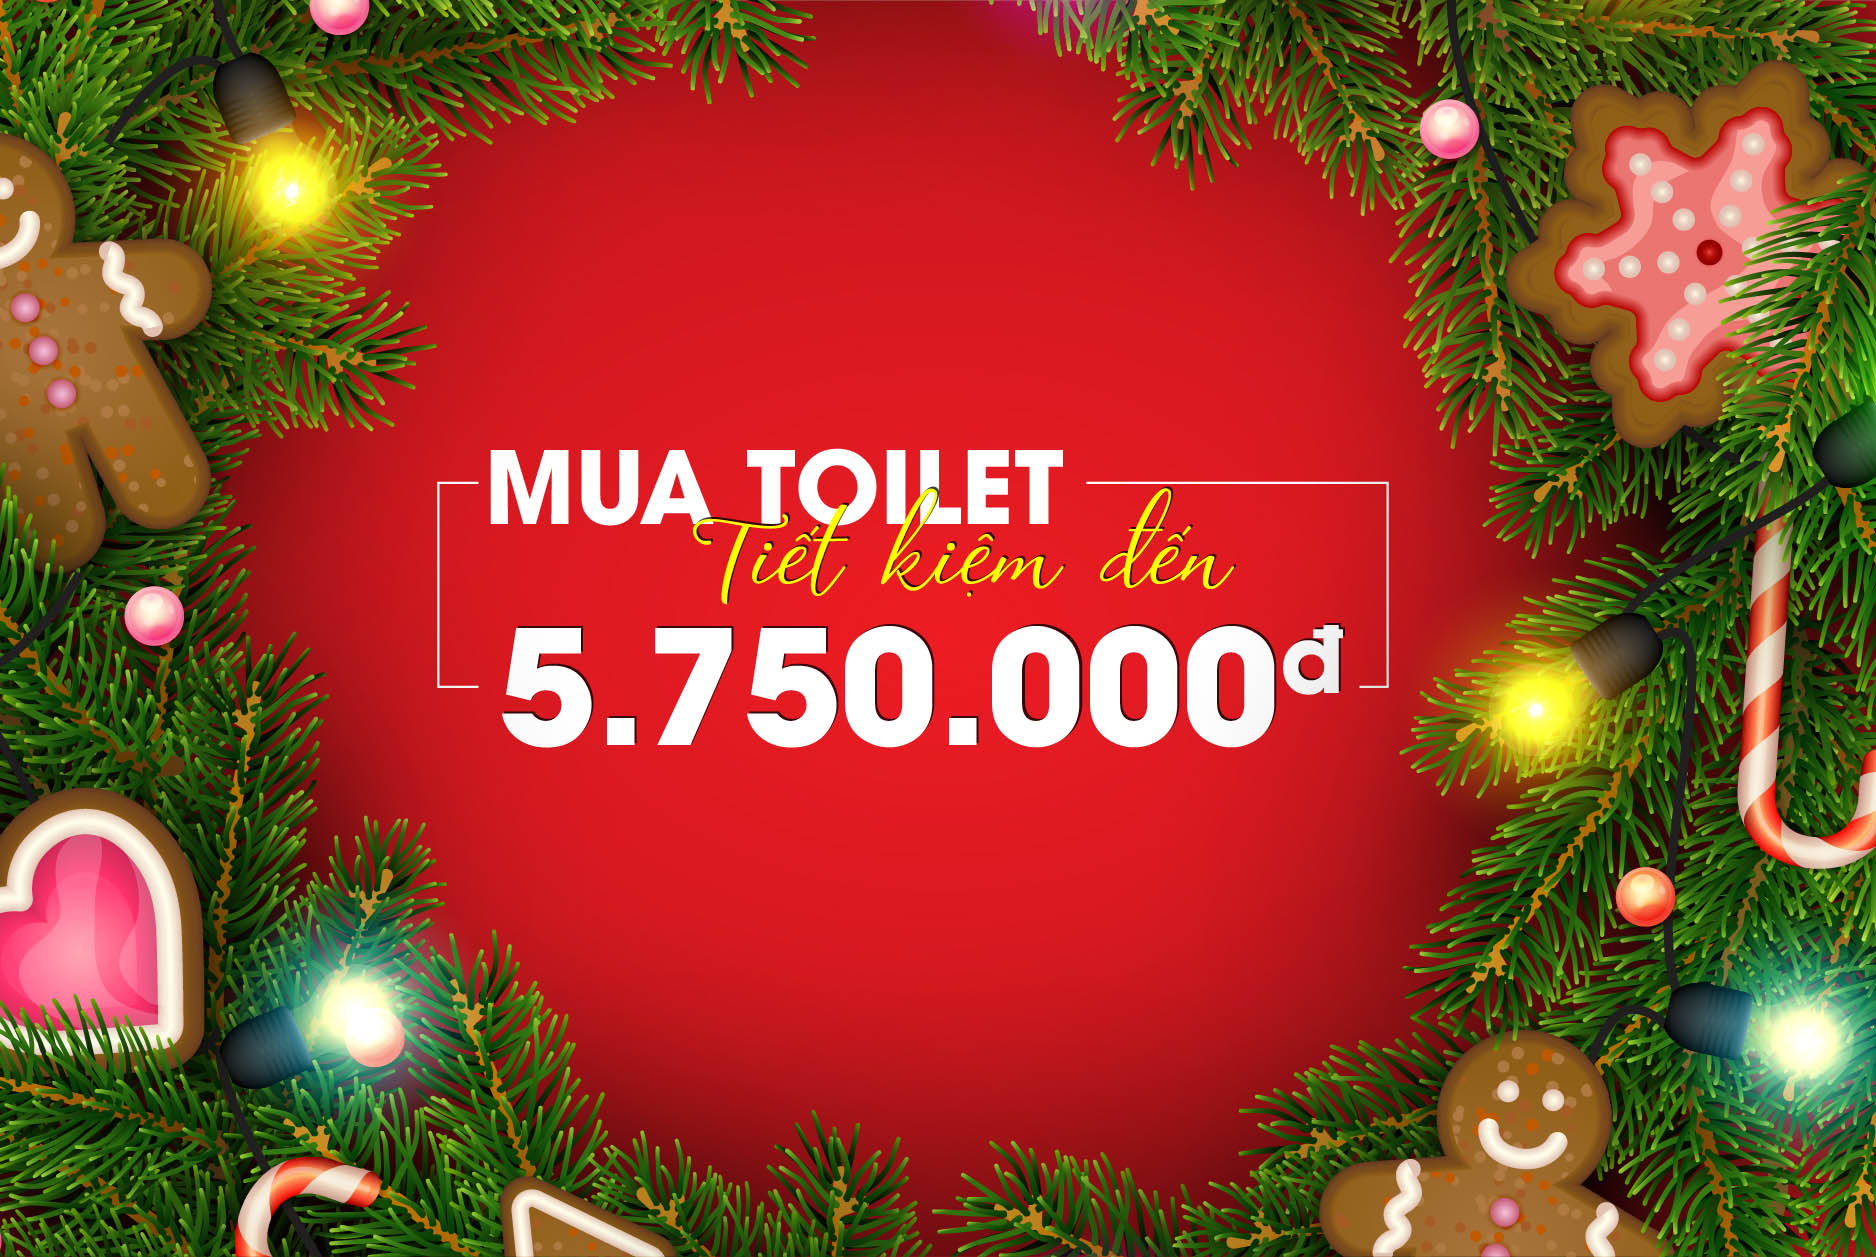 Tháng 12 này, đến mua toilet tại PGHOME để tiết kiệm hơn 5 triệu